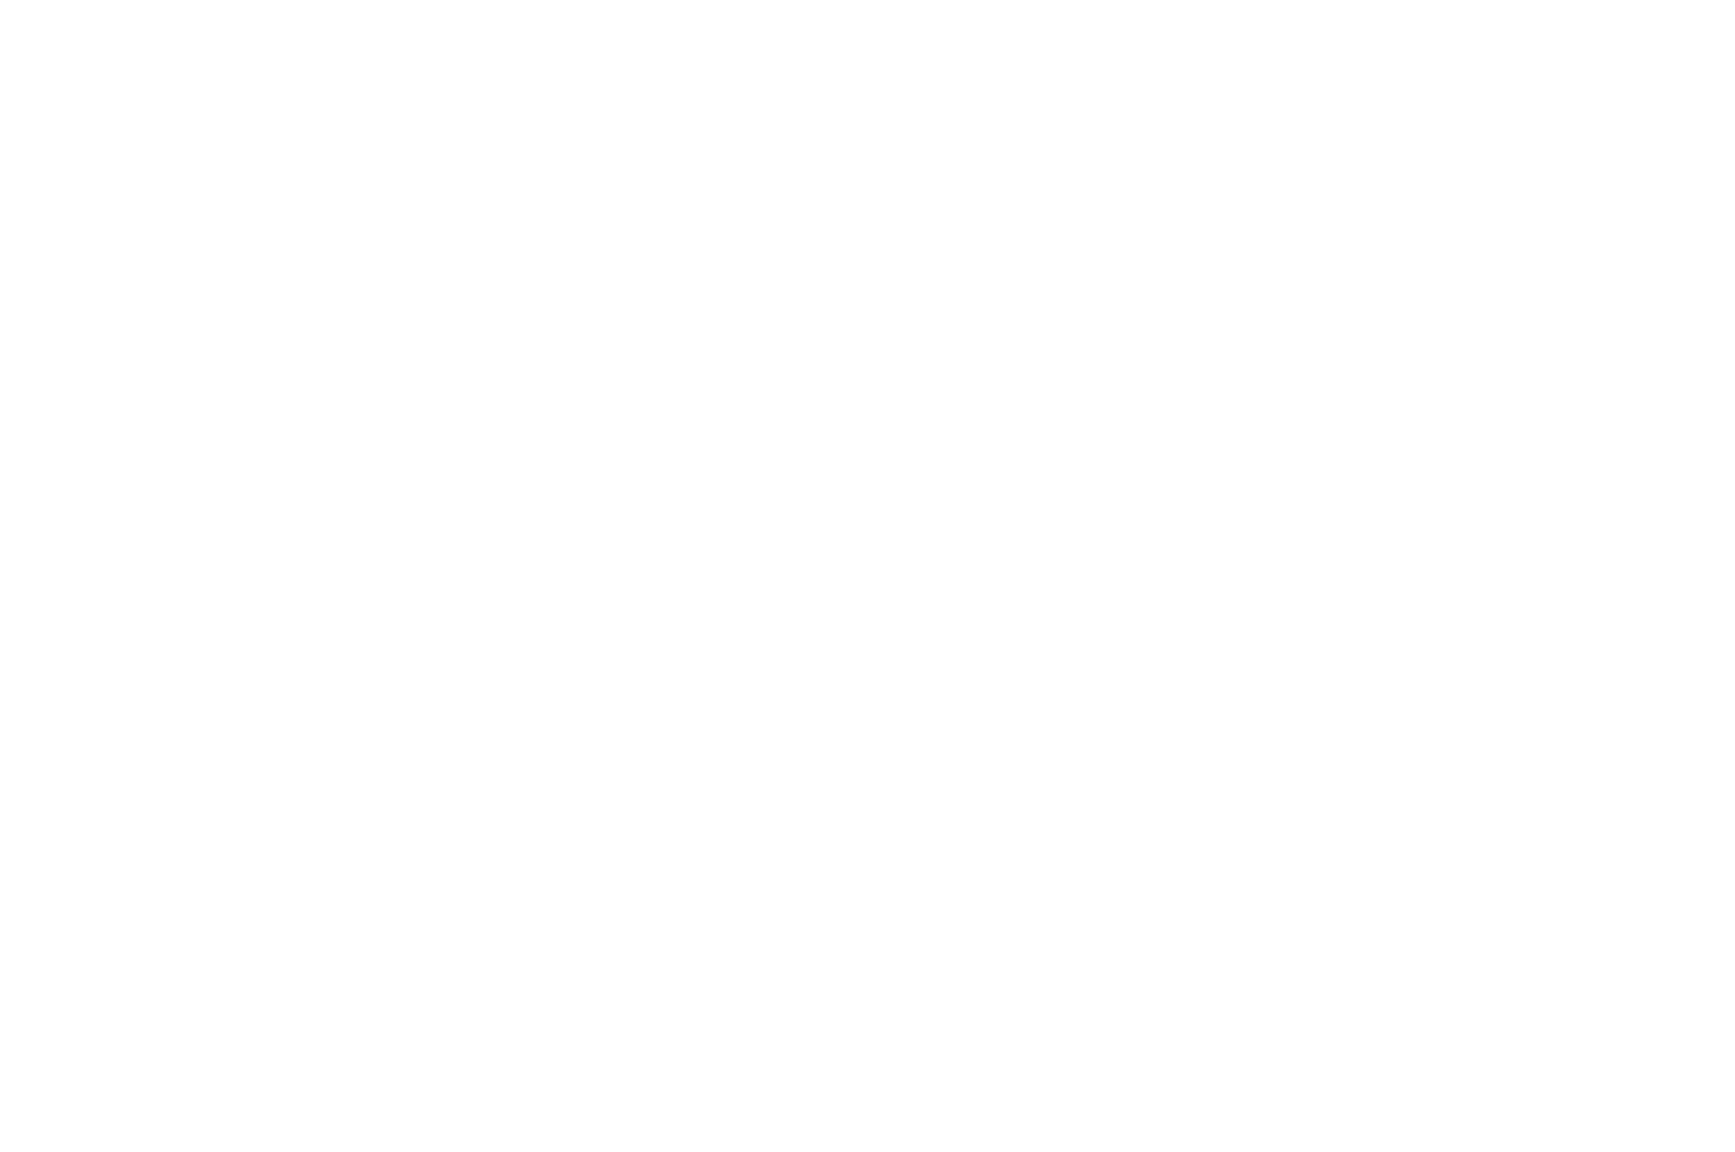 Christian Worldview Film Festival Best Short Film Award